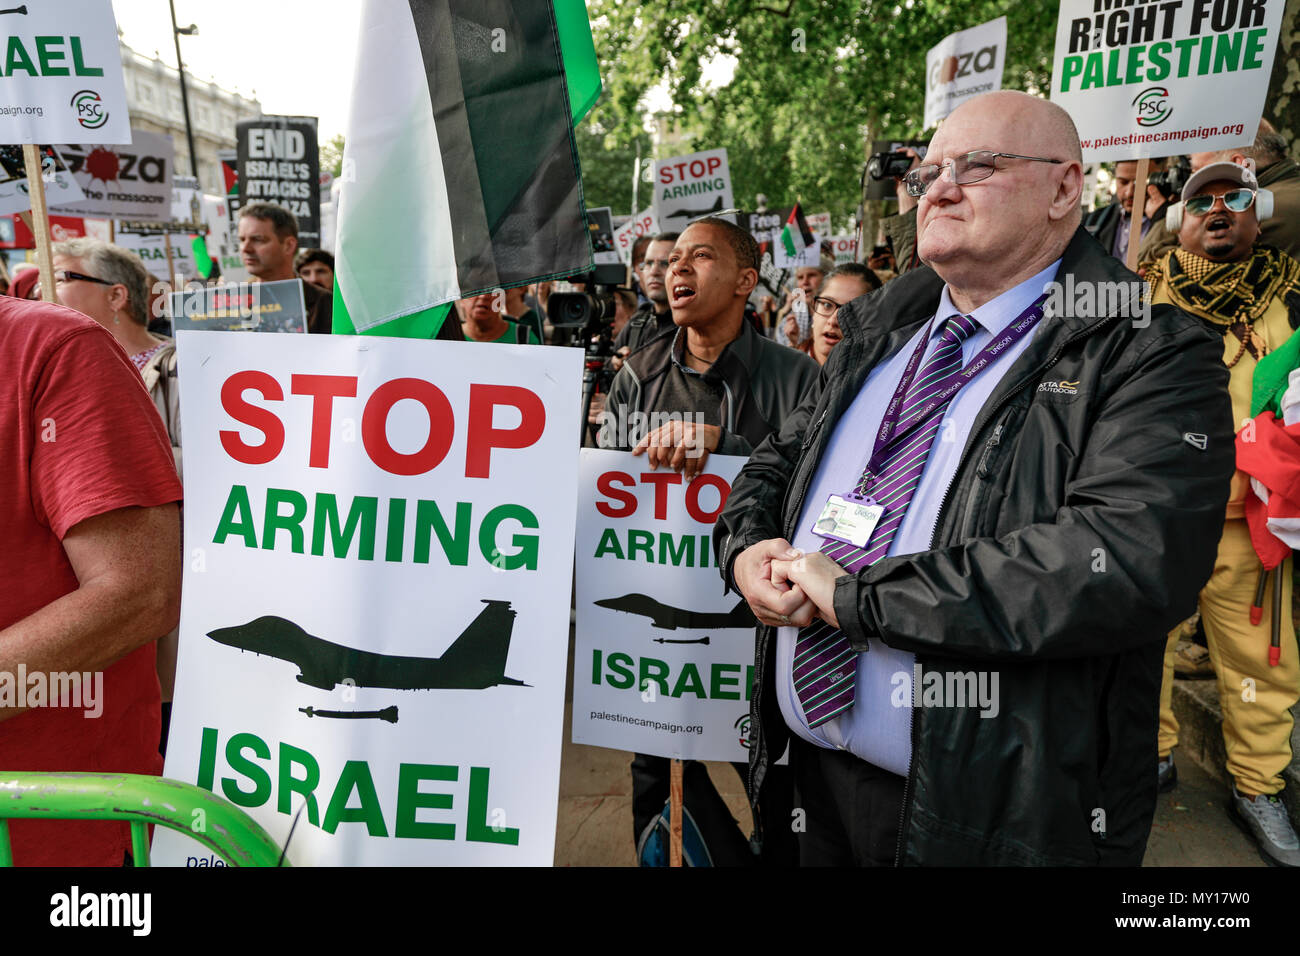 Londra, Inghilterra. 5 Giugno, 2018. Palestinesi Campagna di Solidarietà di protesta, Londra protesta: libera la Palestina - Fermare le uccisioni - Stop armare Israele. Credito: Brian Duffy/Alamy Live News Foto Stock